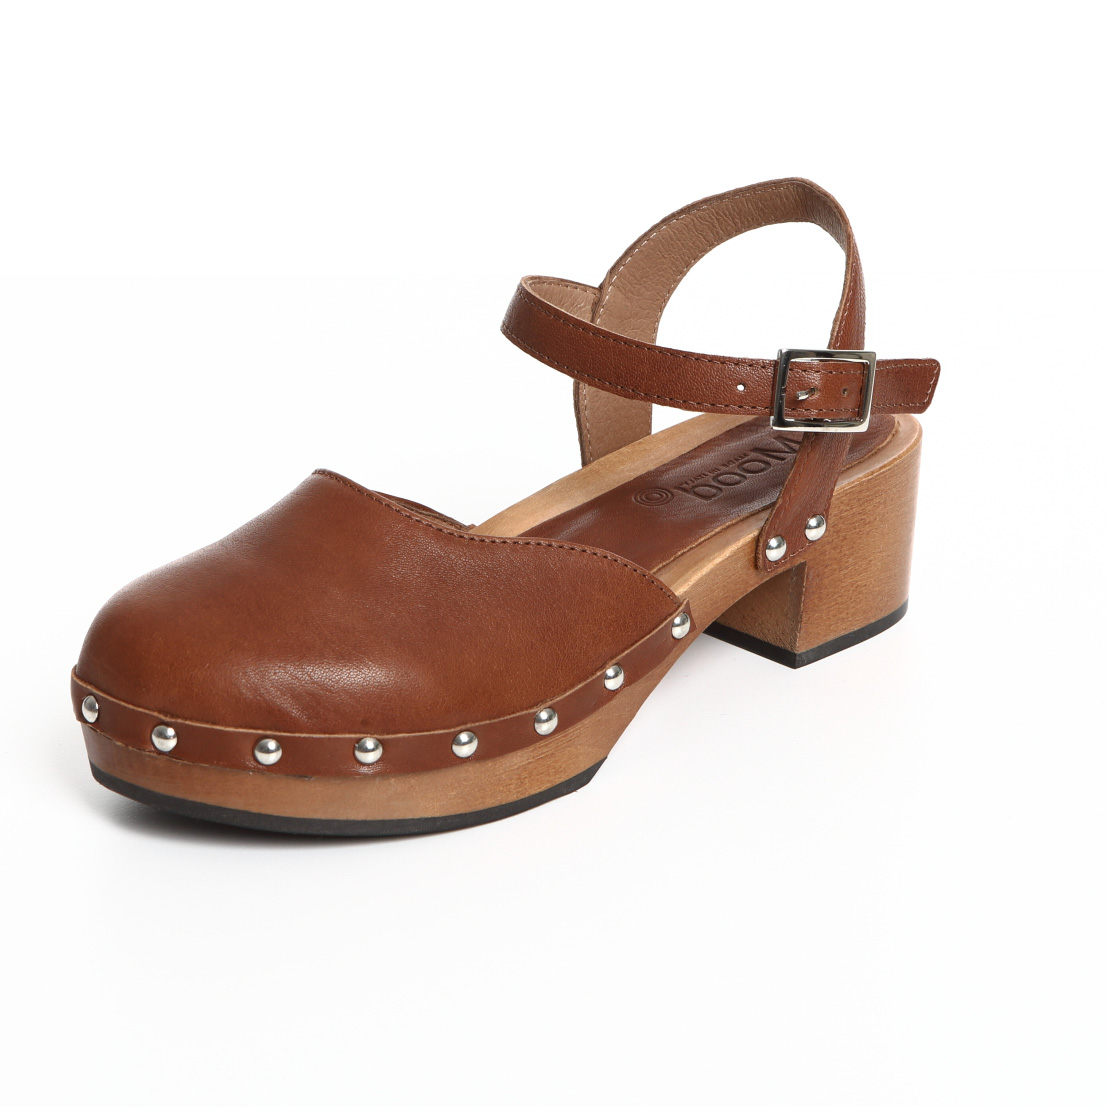 Sandalo in legno basso cuoio - Moodshoes - Scarpe e zoccoli donna made in  italy